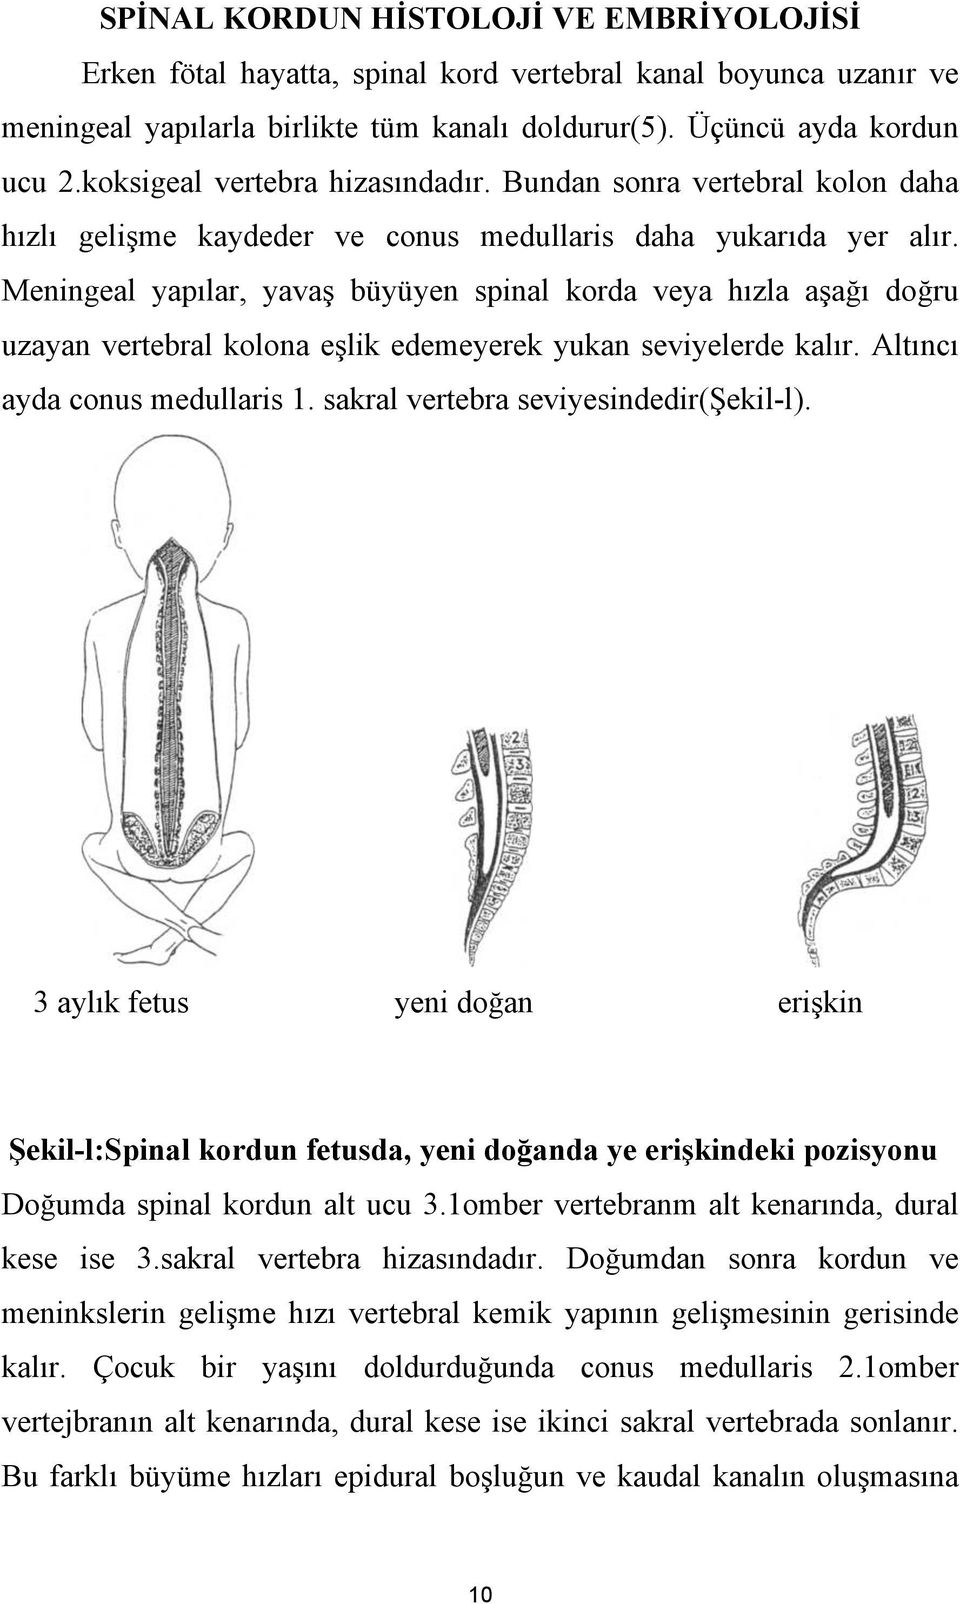 Meningeal yapılar, yavaş büyüyen spinal korda veya hızla aşağı doğru uzayan vertebral kolona eşlik edemeyerek yukan seviyelerde kalır. Altıncı ayda conus medullaris 1.